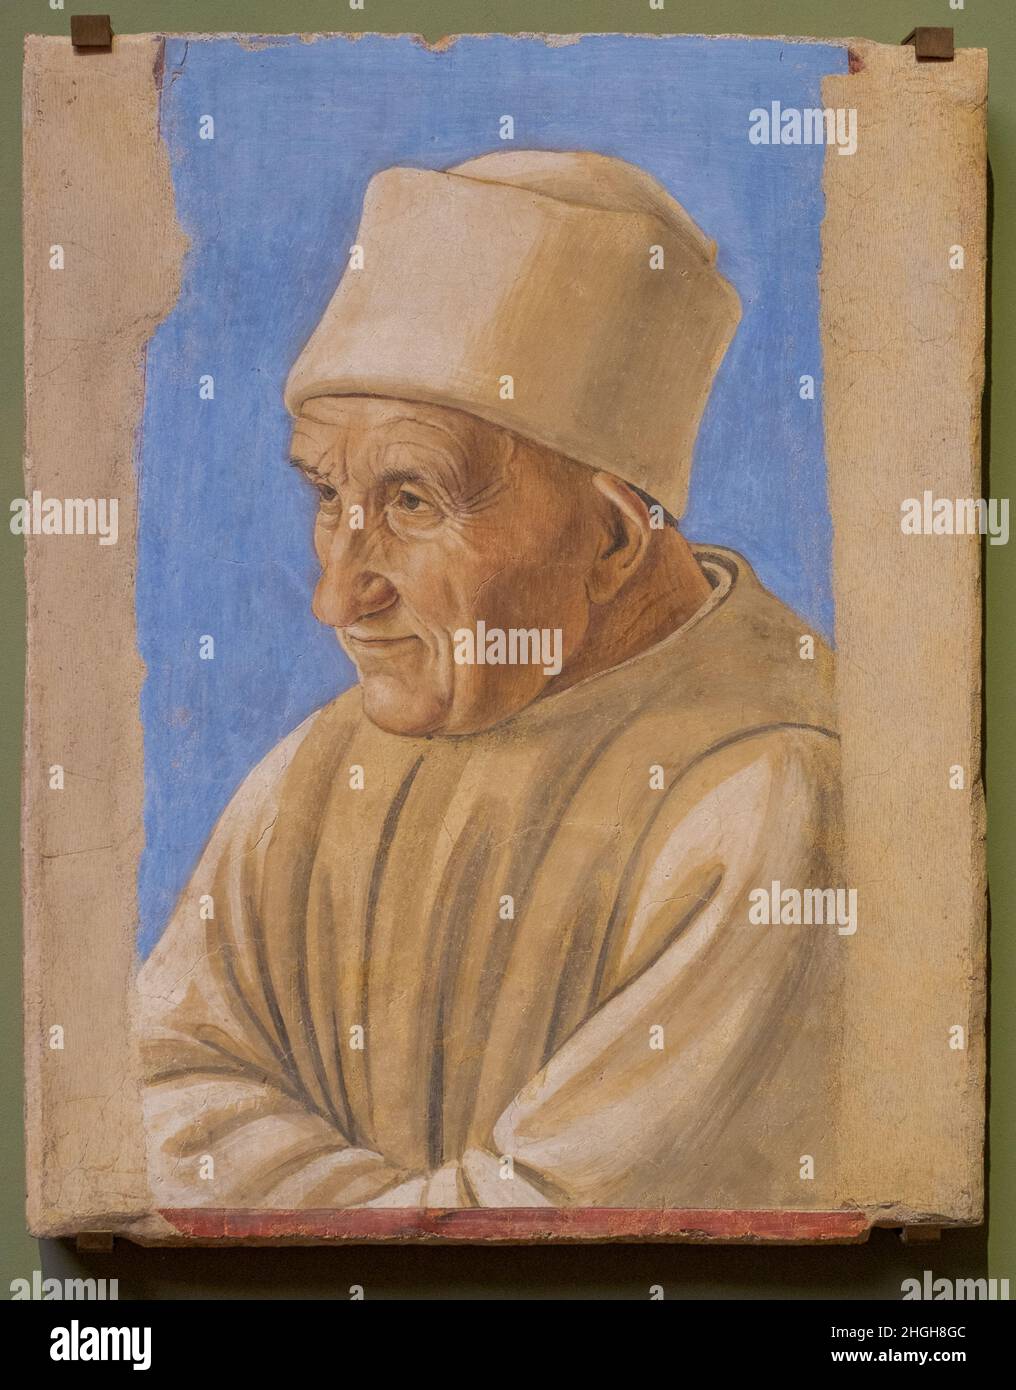 Pittore fiorentino anonimo, Ritratto dell'anziano del 15th° secolo; ultimo quarto del 15th° secolo; fresco in mattonella; Gallerie degli Uffizi, Firenze, Foto Stock